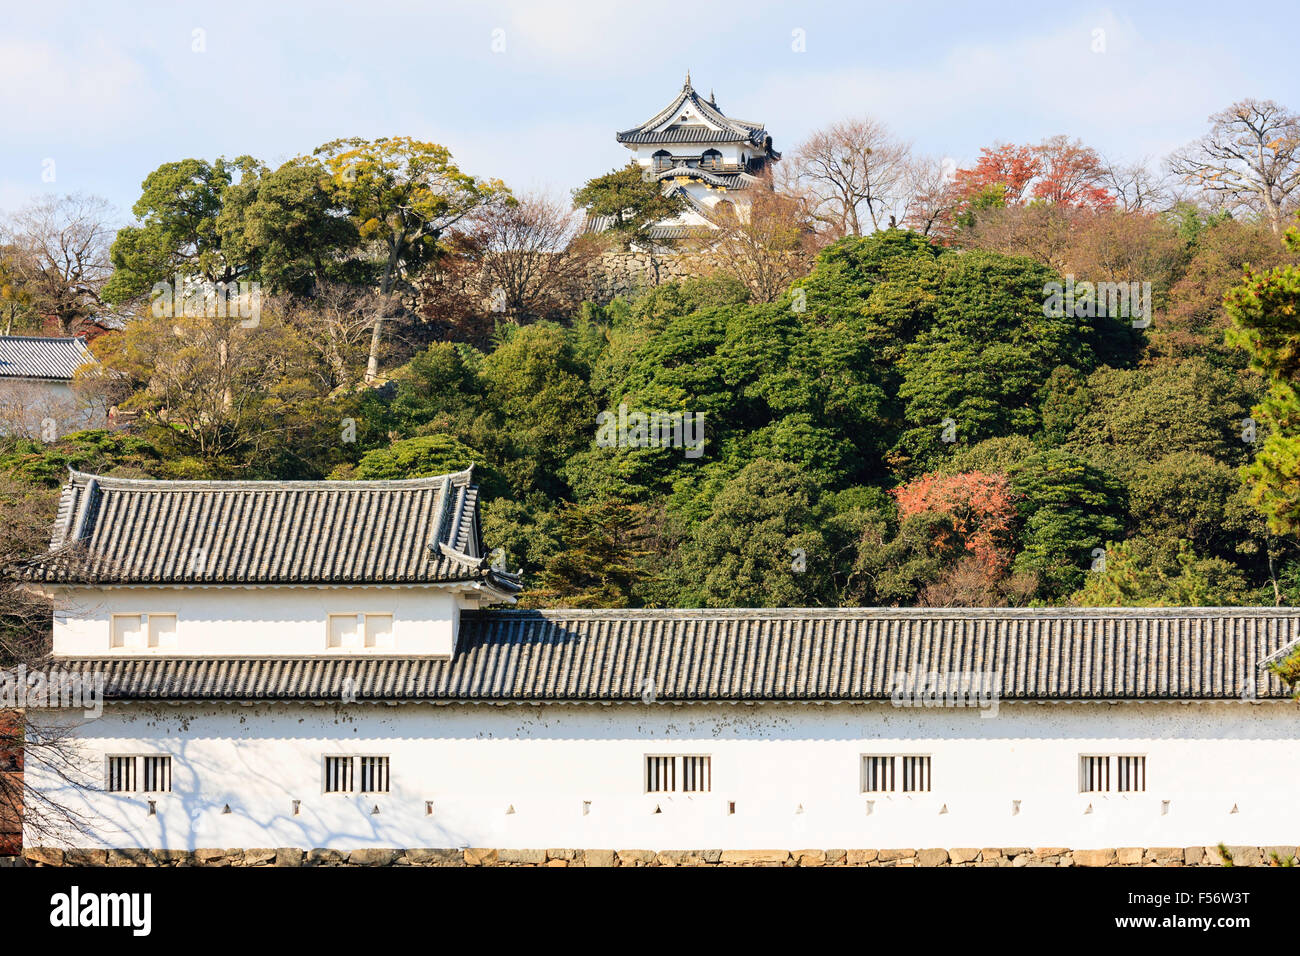 Japan Shimotakai Schloss Die Sawaguchi Yagura Tower Weiss Verputzten Wanden Im Vordergrund Mit Tenshu Am Baum Hugel Oben Oben Halten Stockfotografie Alamy